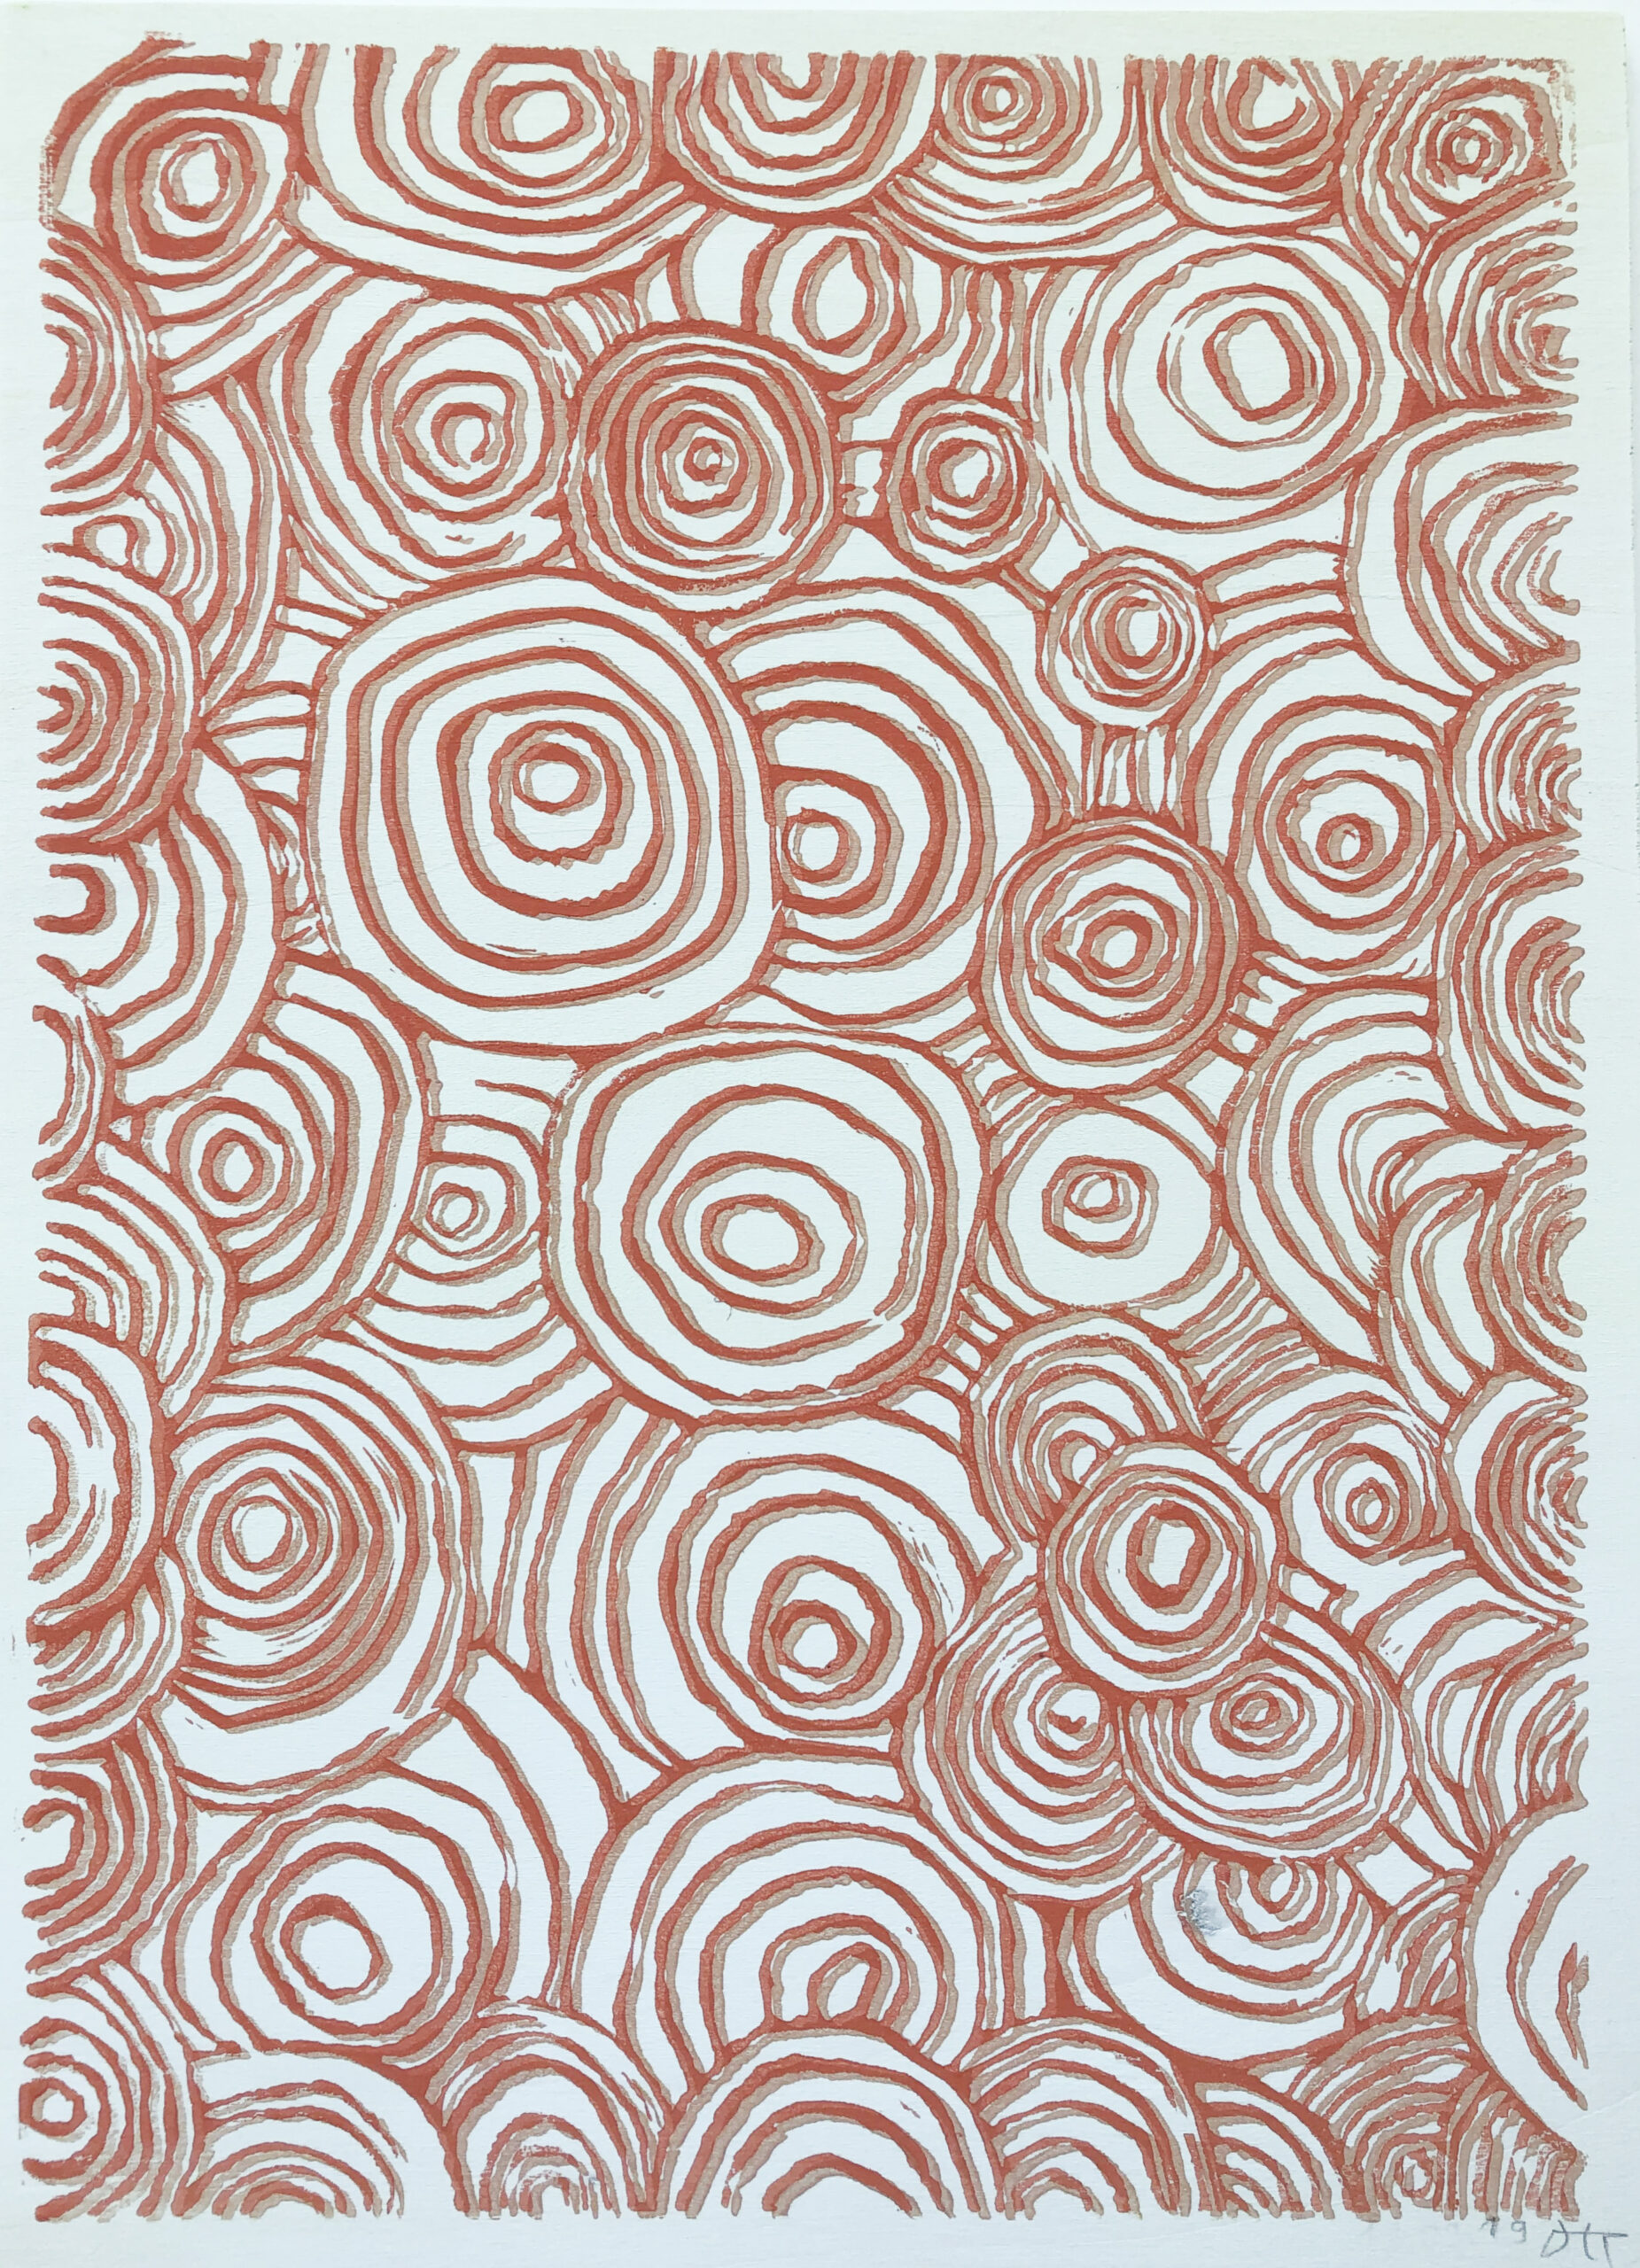 ATELIER FREISTIL: Circles Red – Linoldruck auf Holz, signiert, mit Aufhänger – 44 x 32 cm